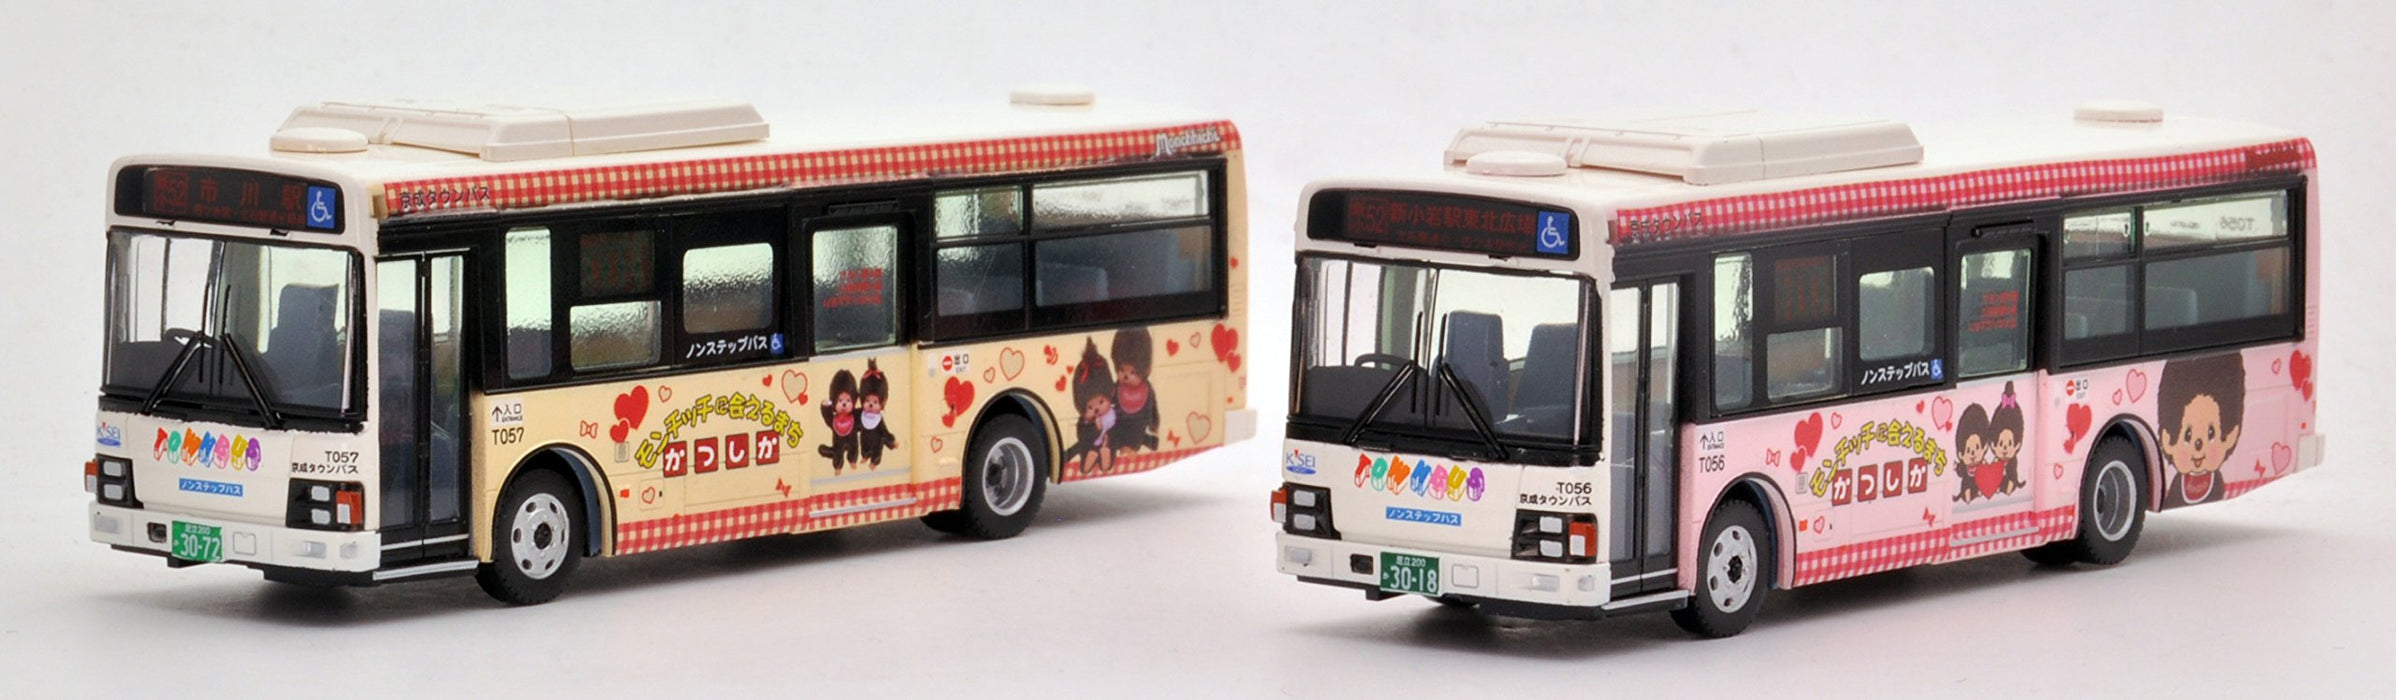 Tomytec National Bus Collection 1/80 Series Jh021 - Keisei Town Katsushika Wrapping Bus